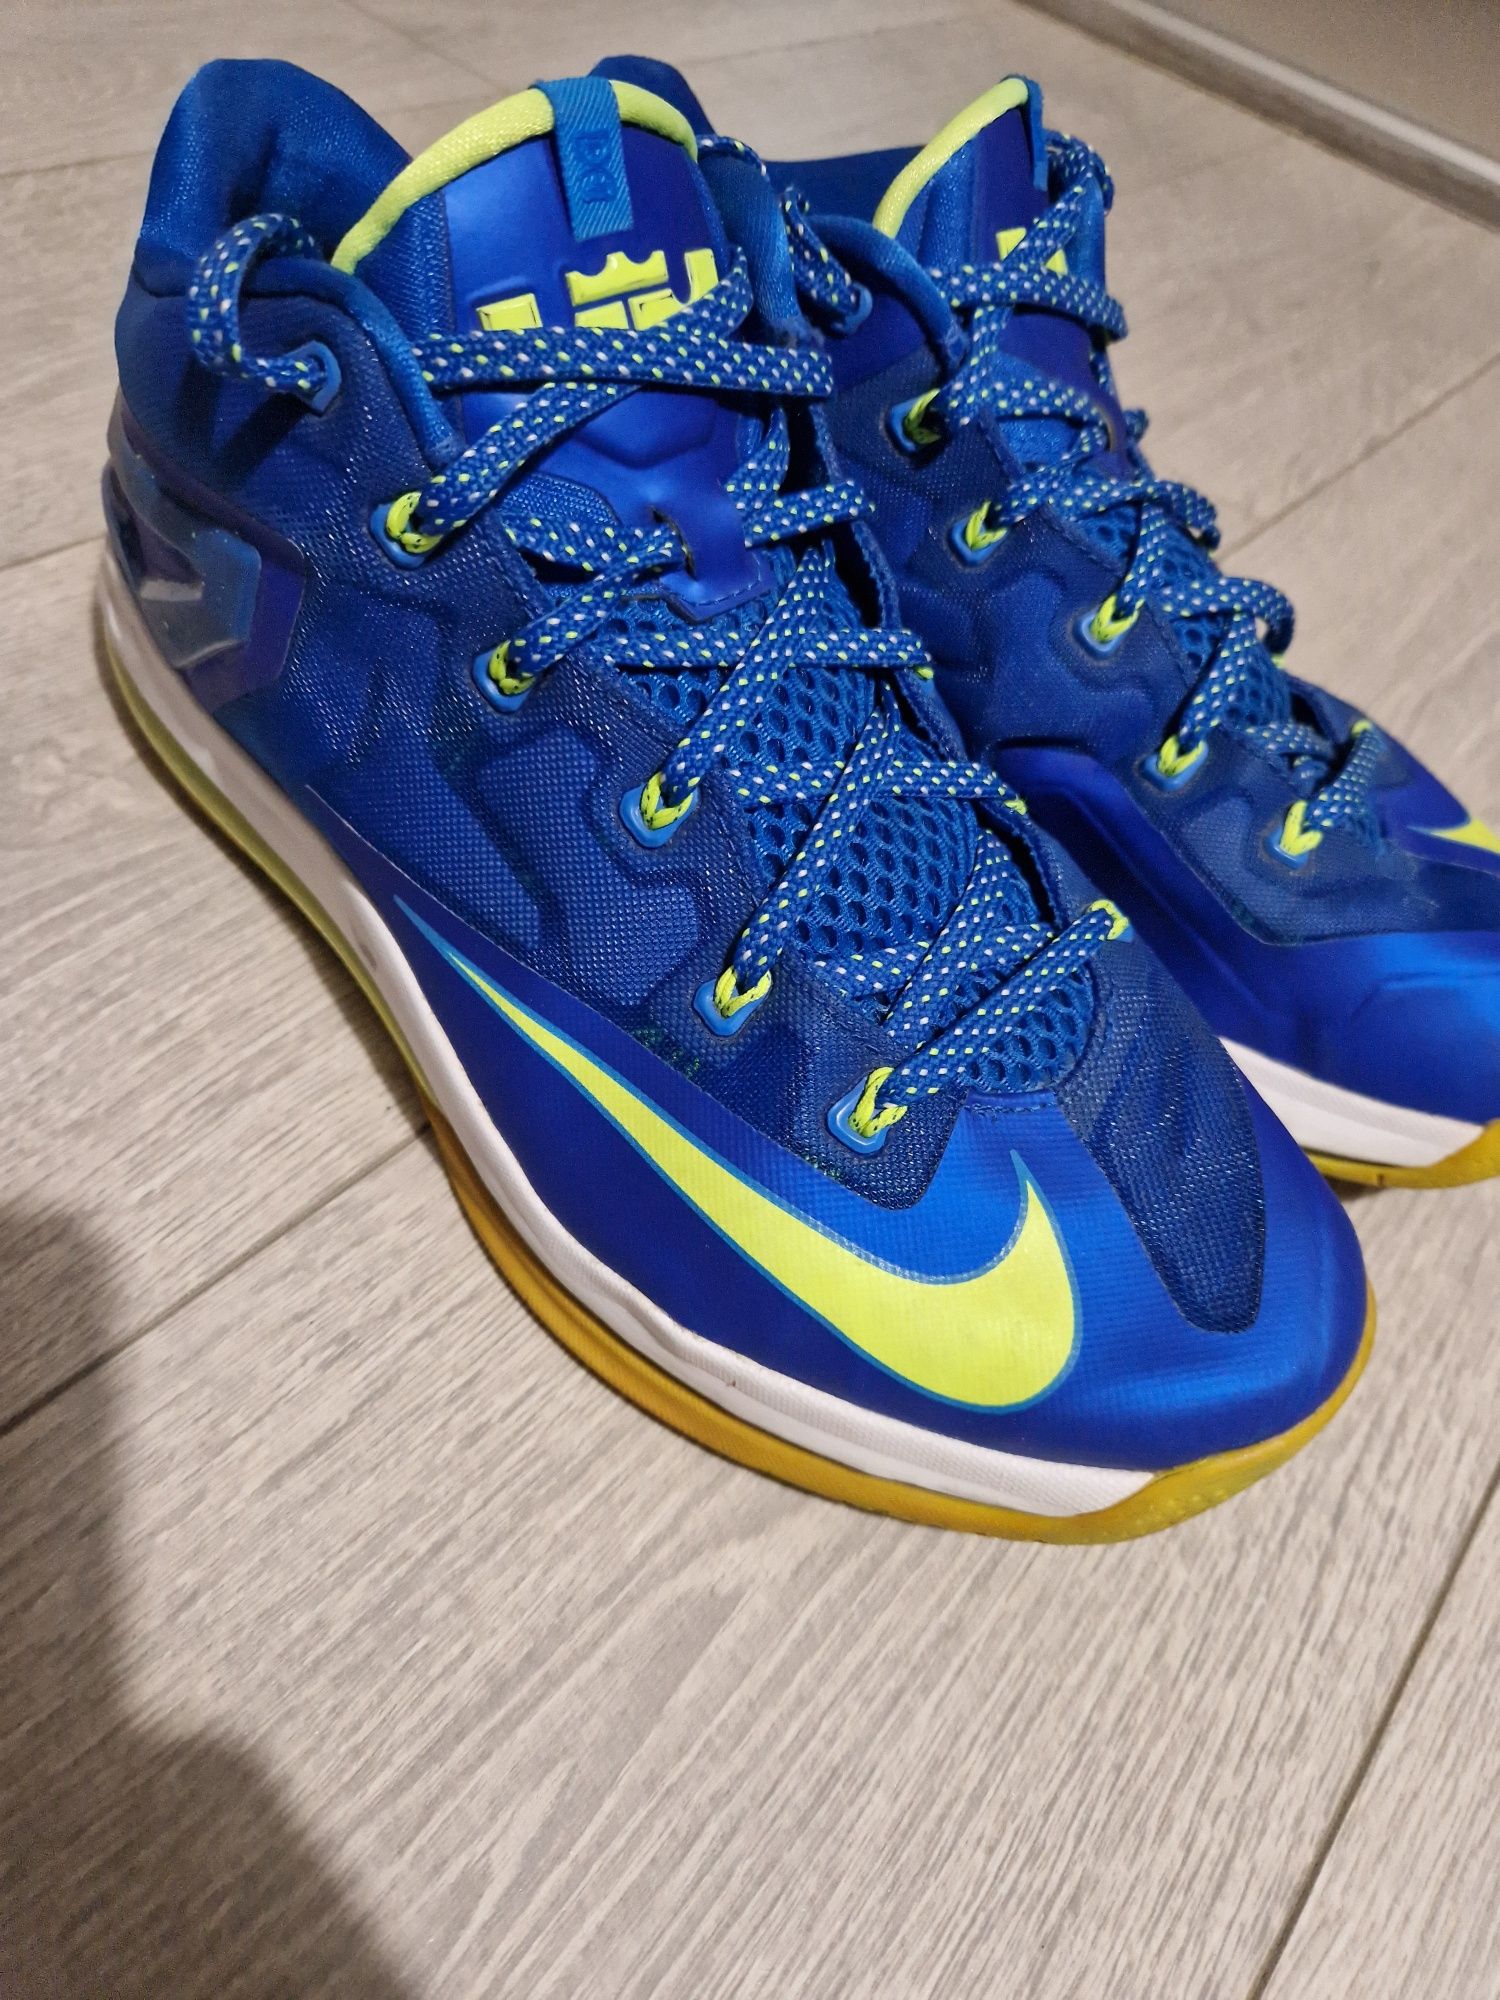 Adidasi baschet Nike Lebron 11 low sprite